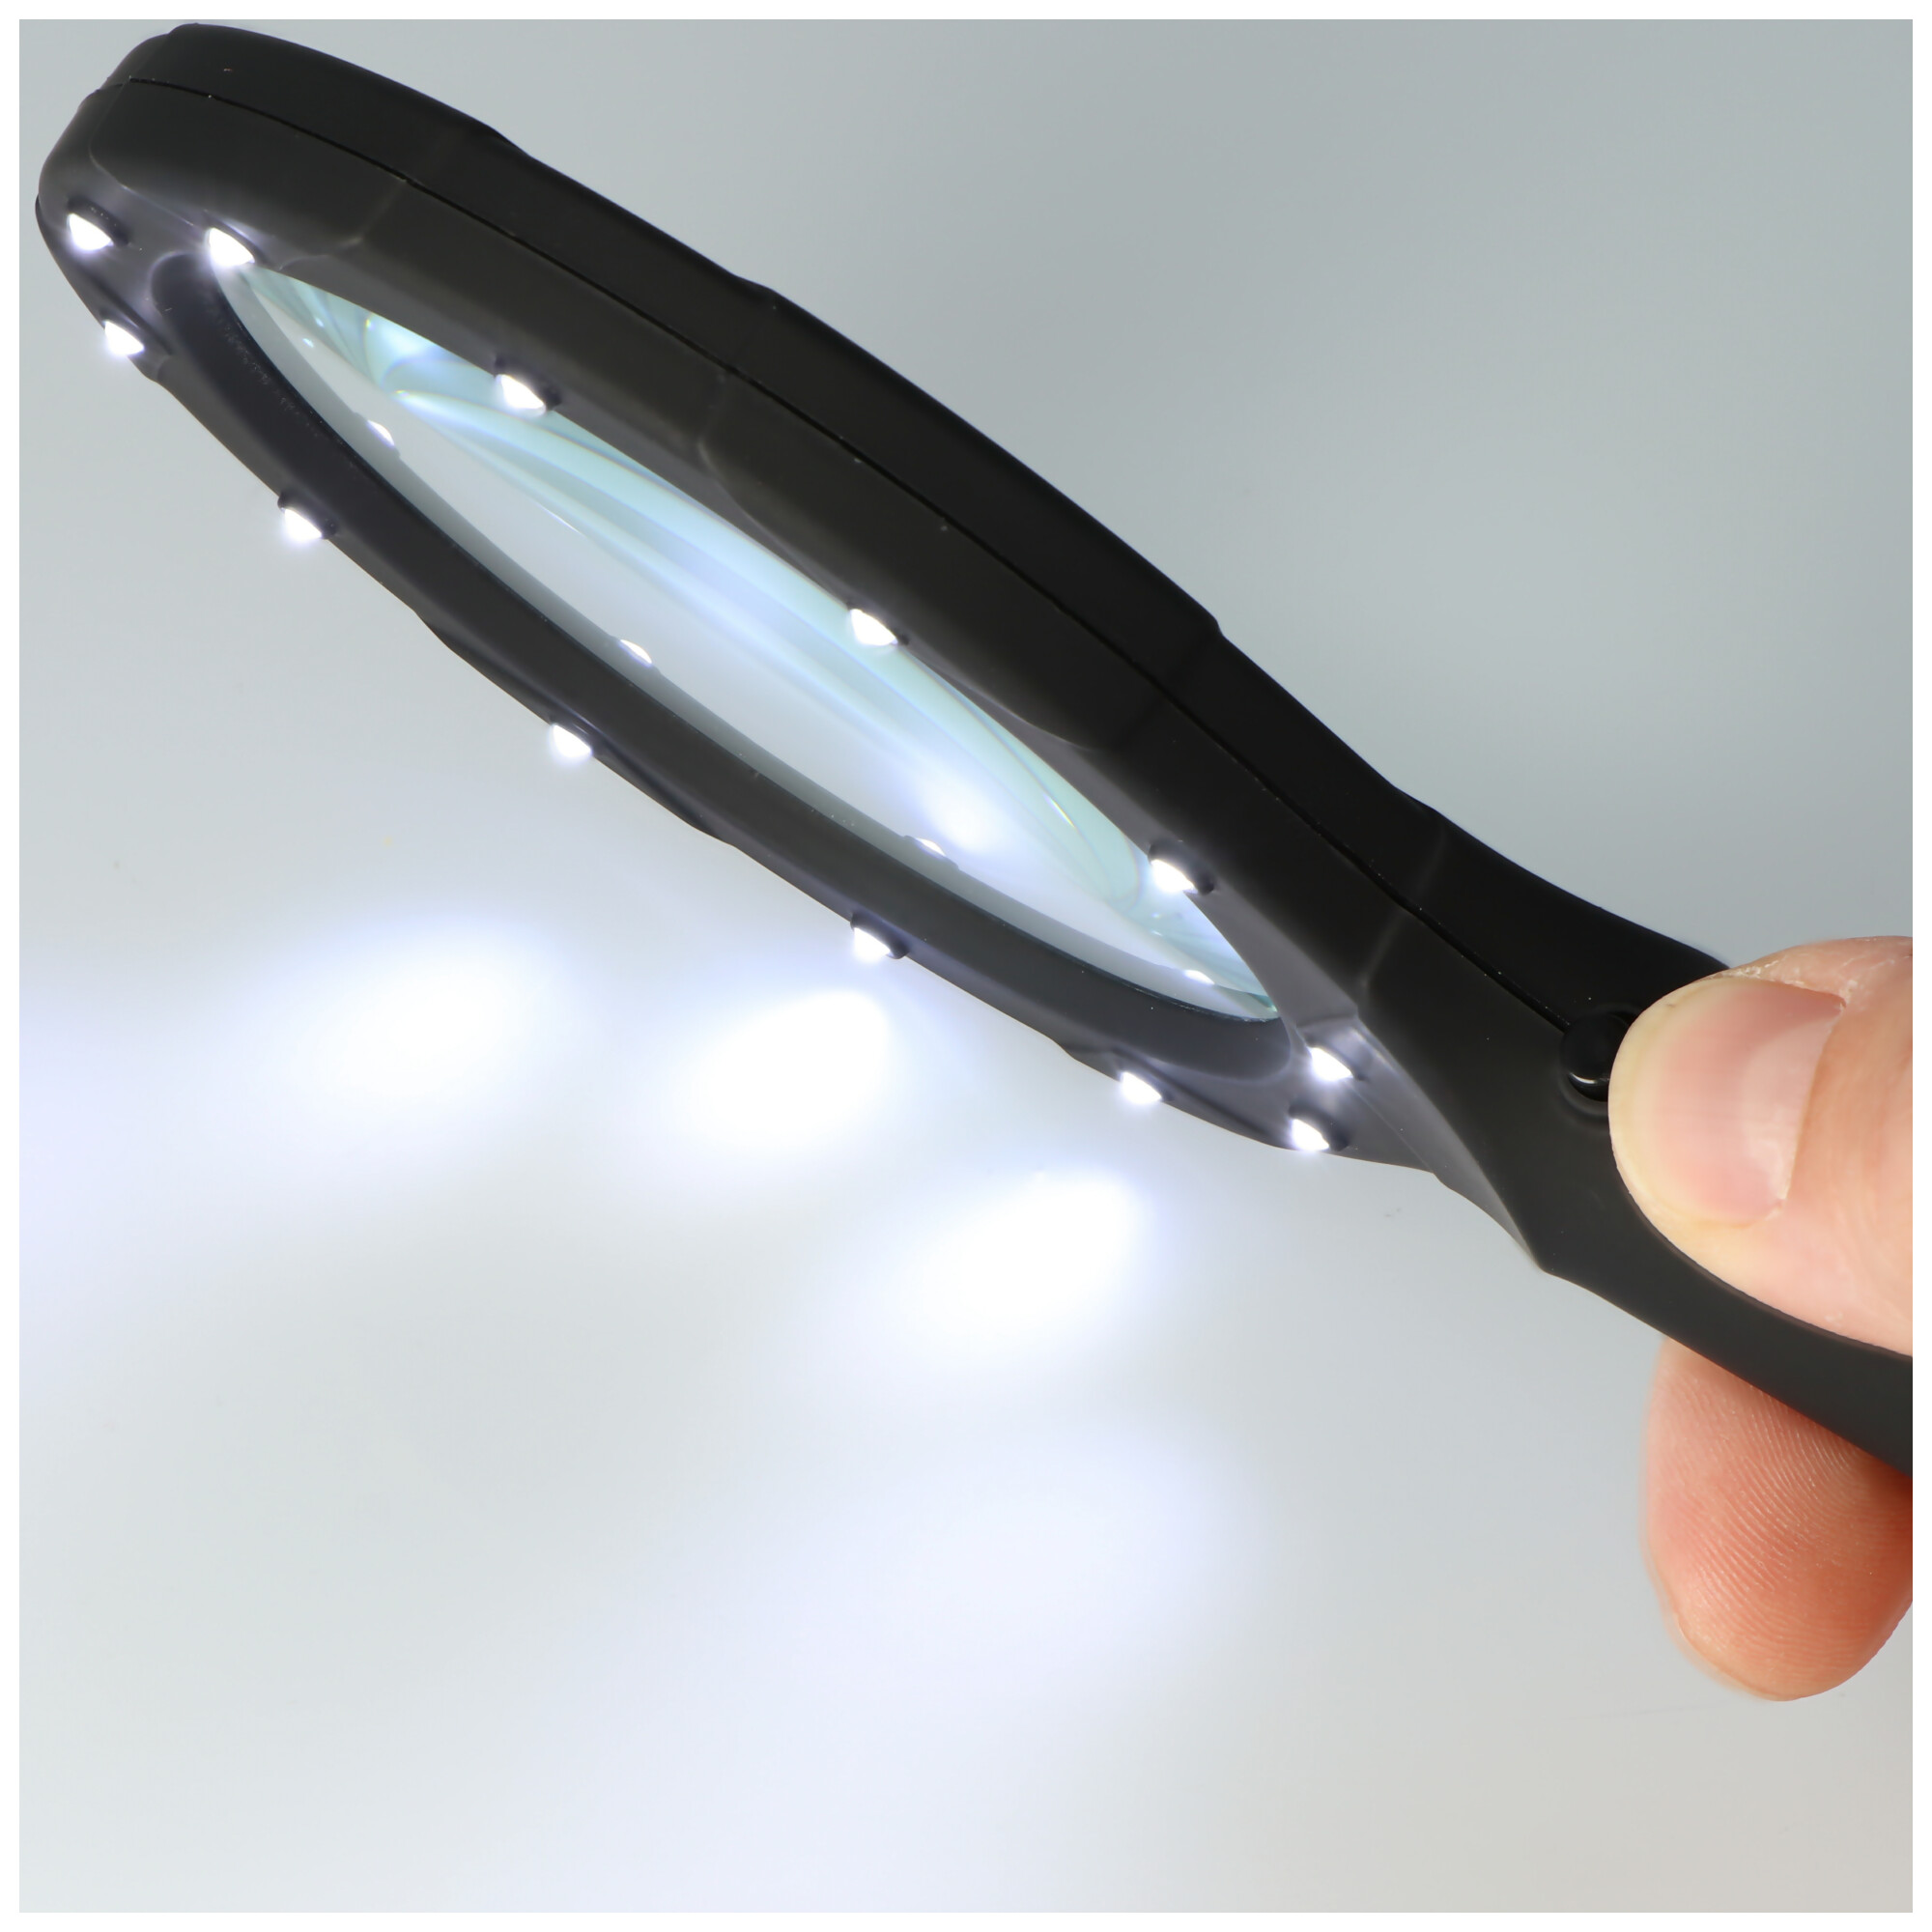 Lupe mit LED-Beleuchtung und 3fach Vergrößerung mit 12 LEDs, IN287, ideal geeignet zum Lesen von Zeitungen, Zeitschriften, Bücher, Karten etc. inklusive Batterien